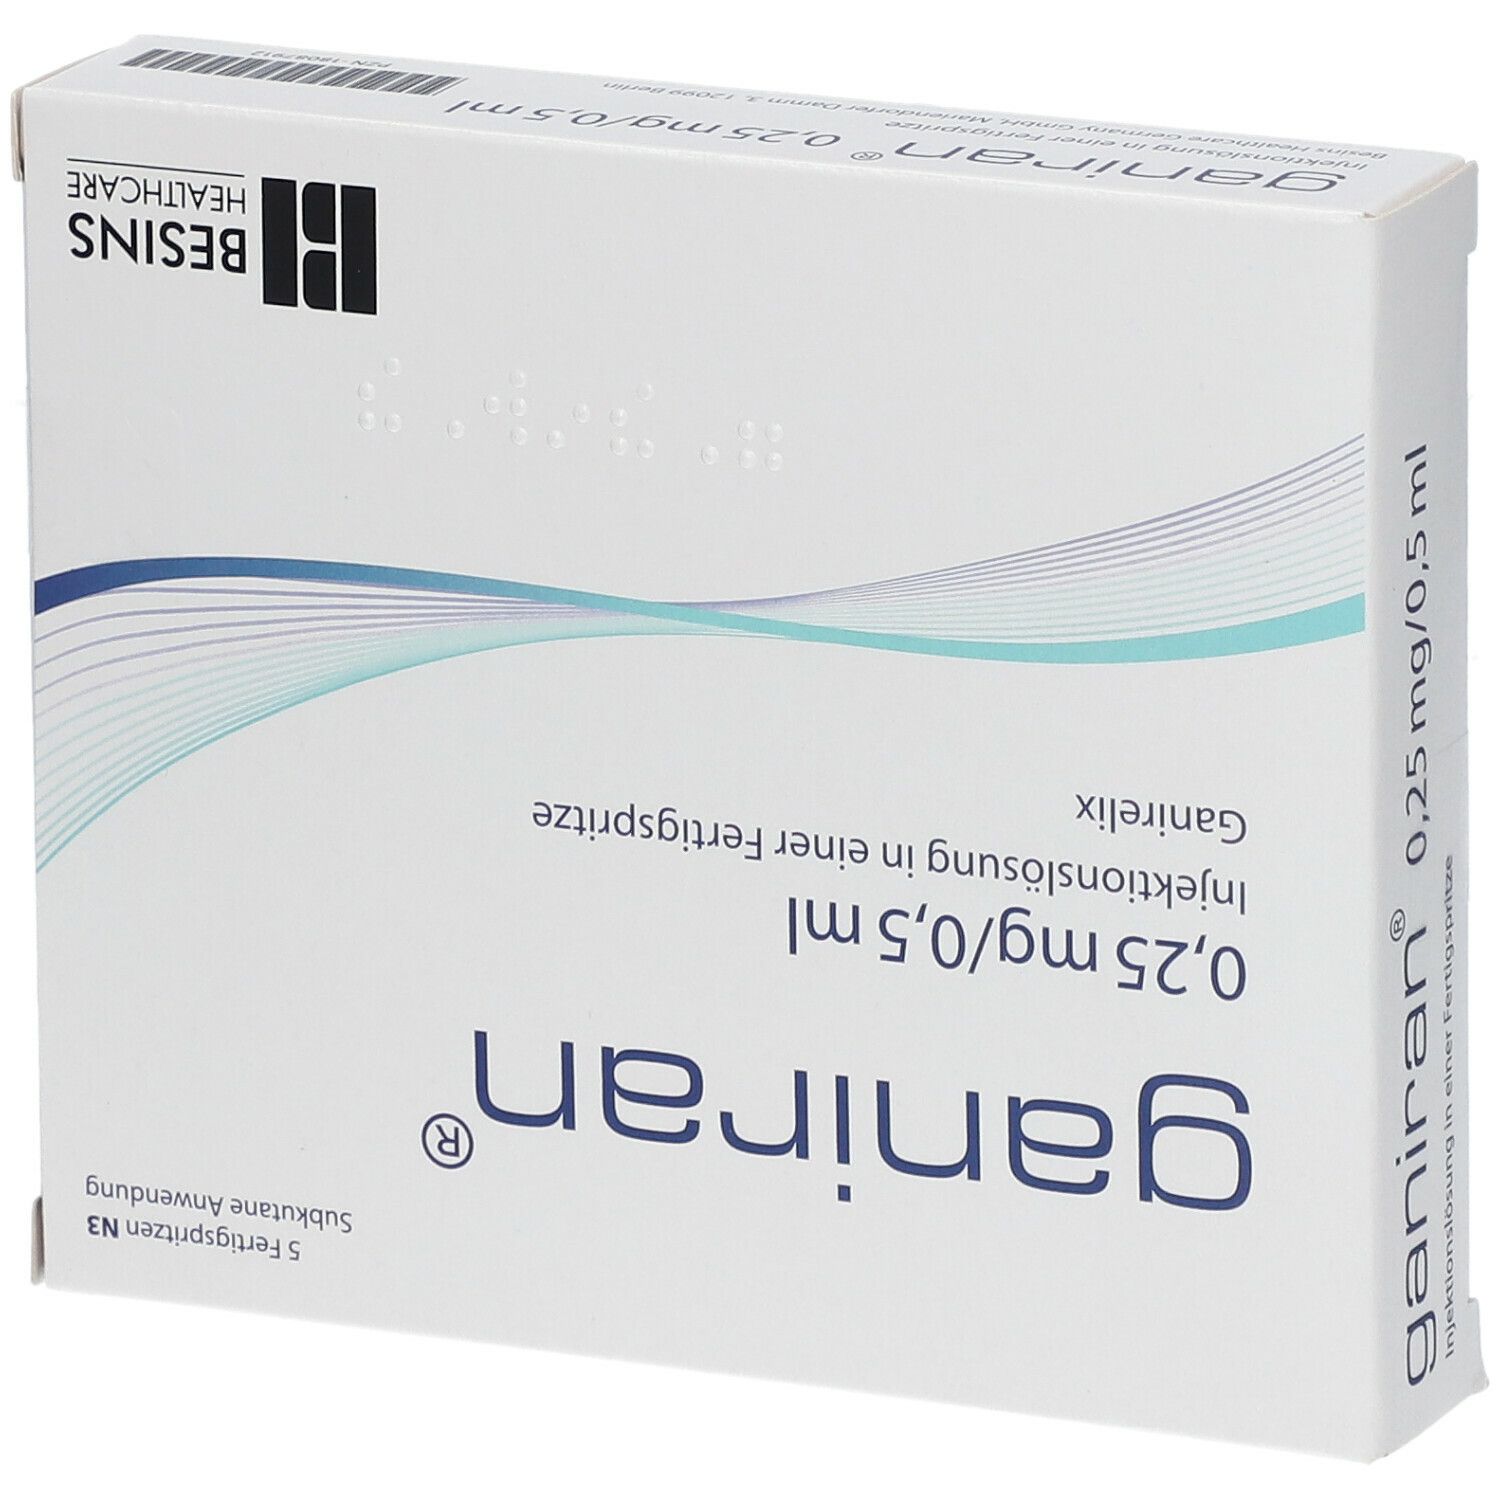 GANIRAN 0,25 mg/0,5 ml Inj.-Lsg.i.e.Fertigspr.